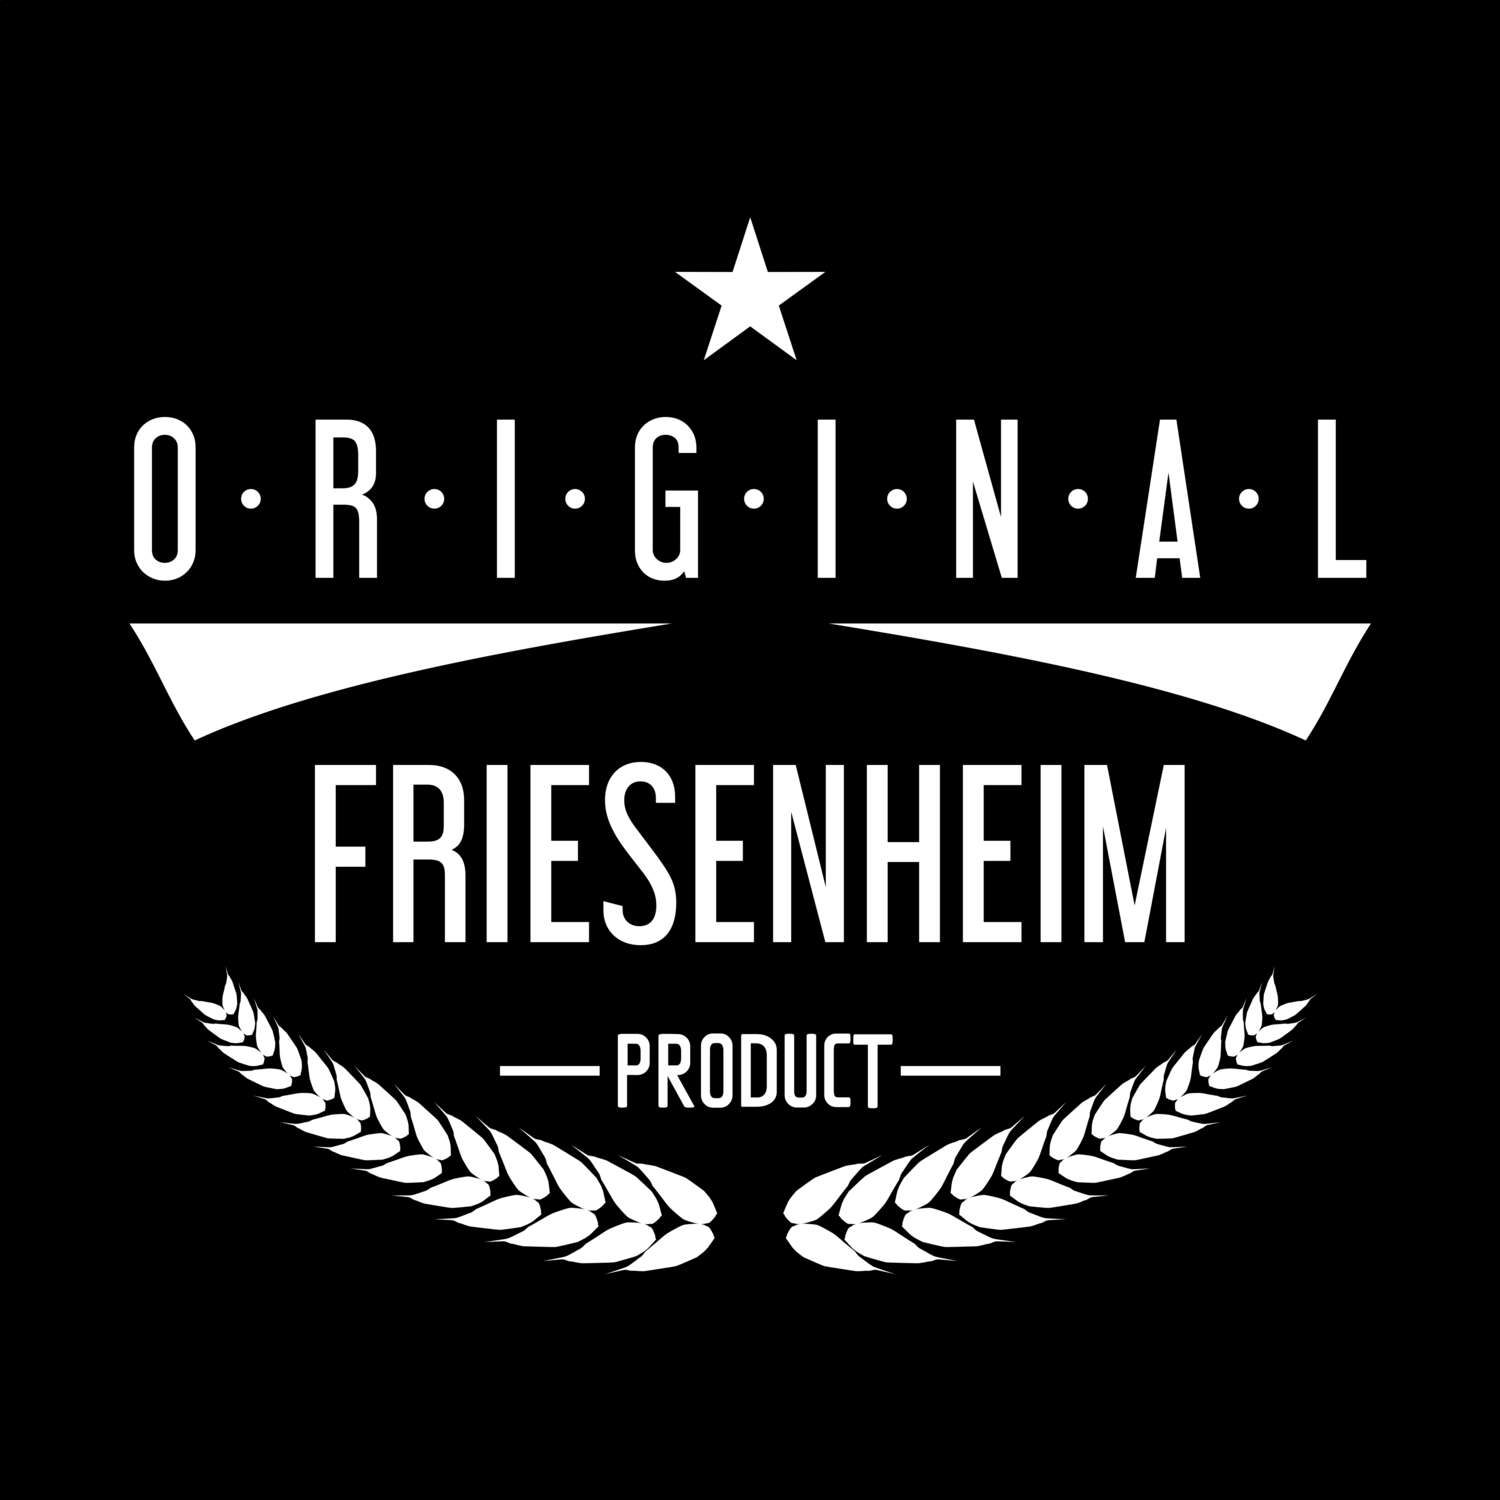 Friesenheim T-Shirt »Original Product«